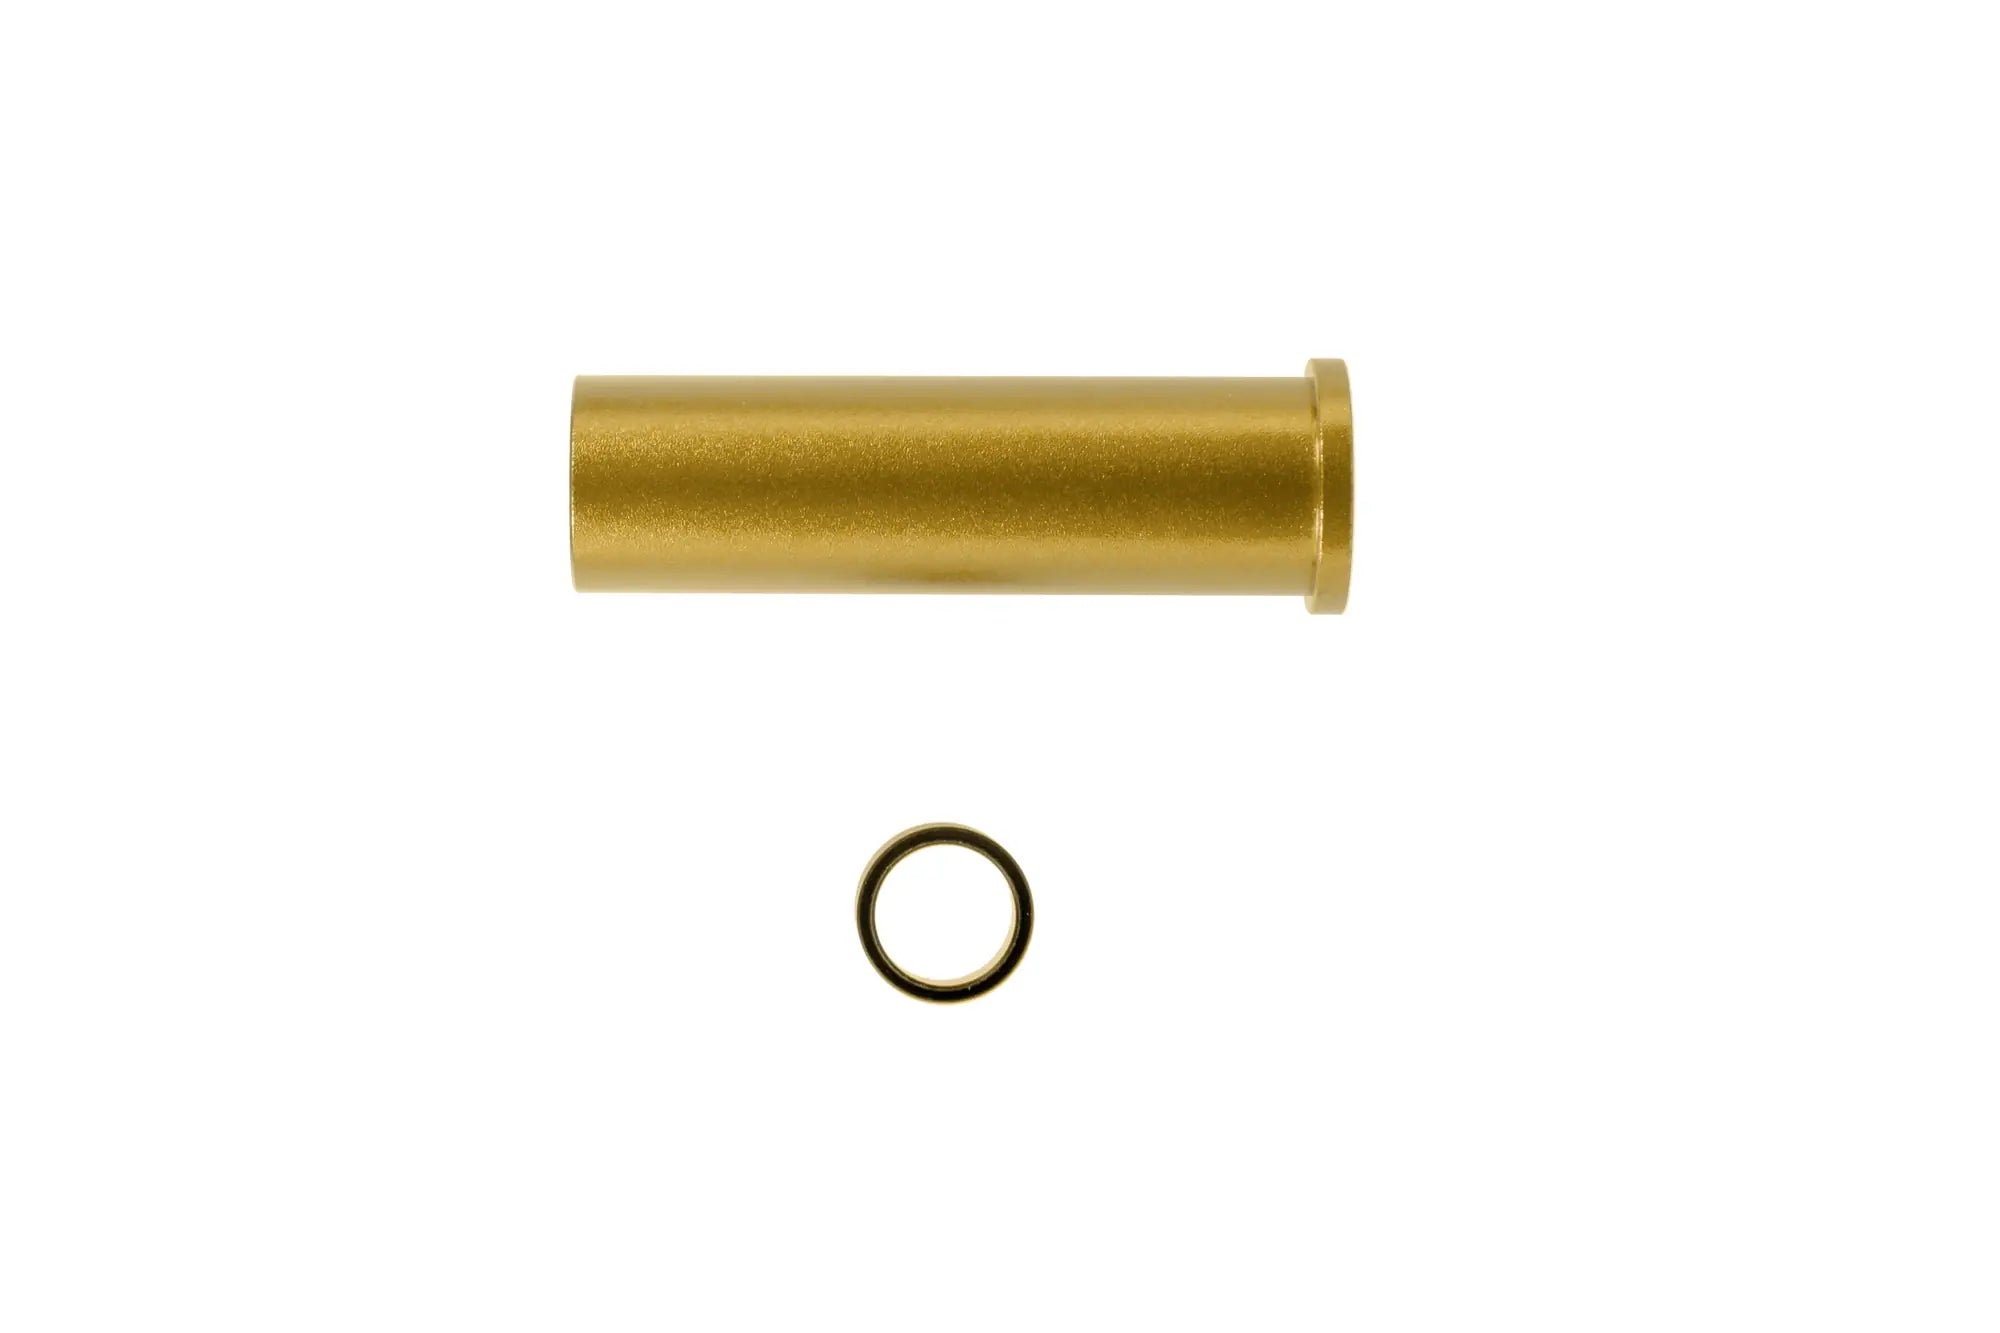 LA Capa Customs lock guide cap for TM Hi-Capa 5.1 replicas (with Delrin ring) Gold